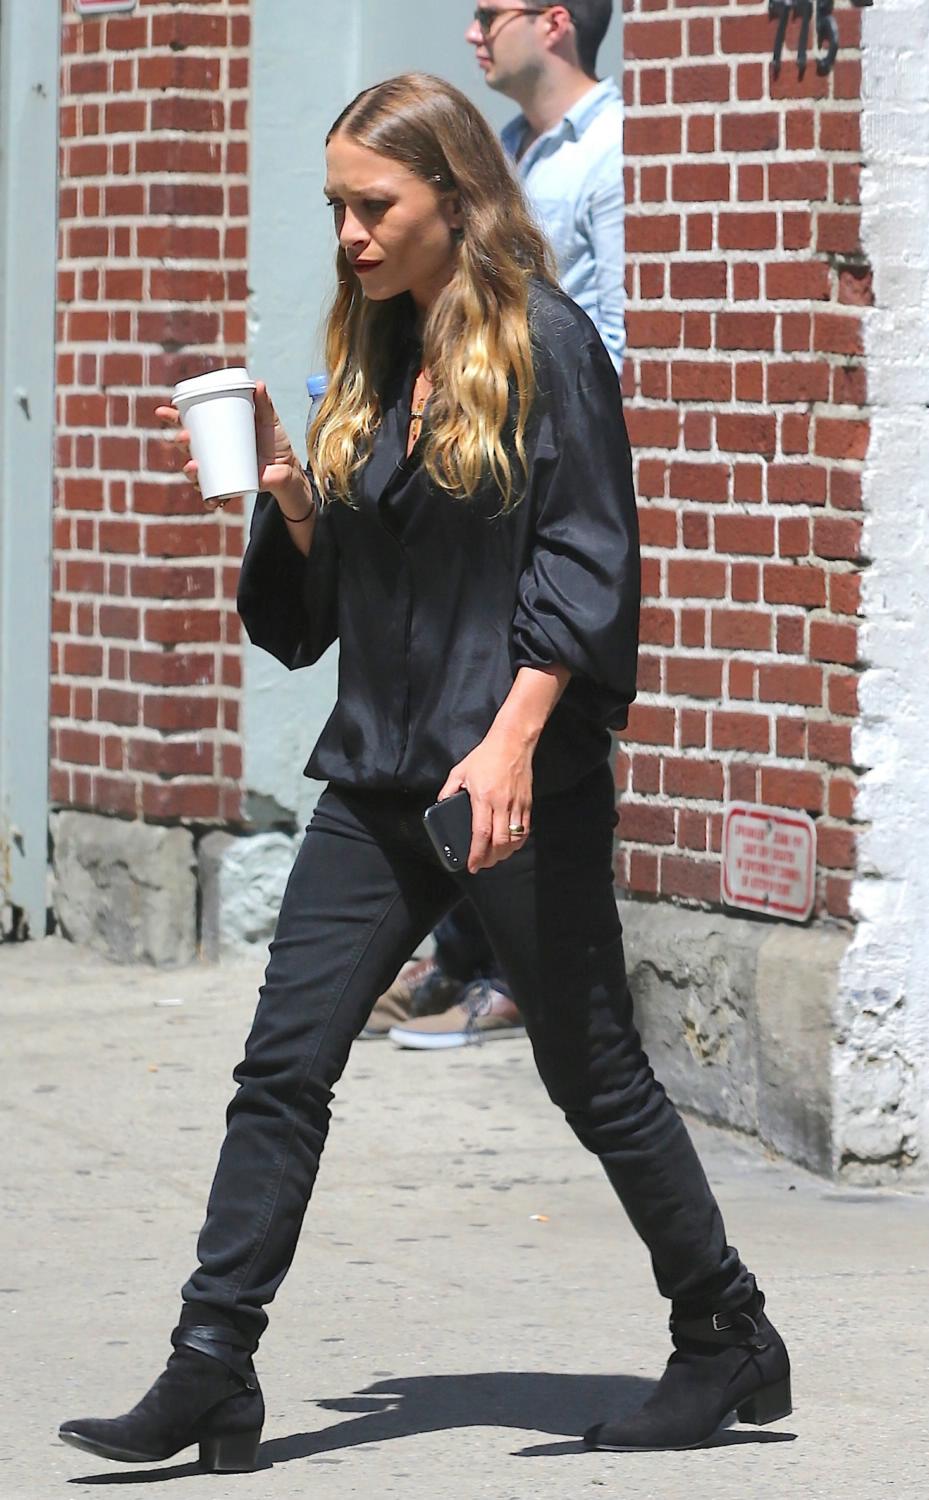 Ashley Olsen Smoking Away in New York City – Celeb Donut